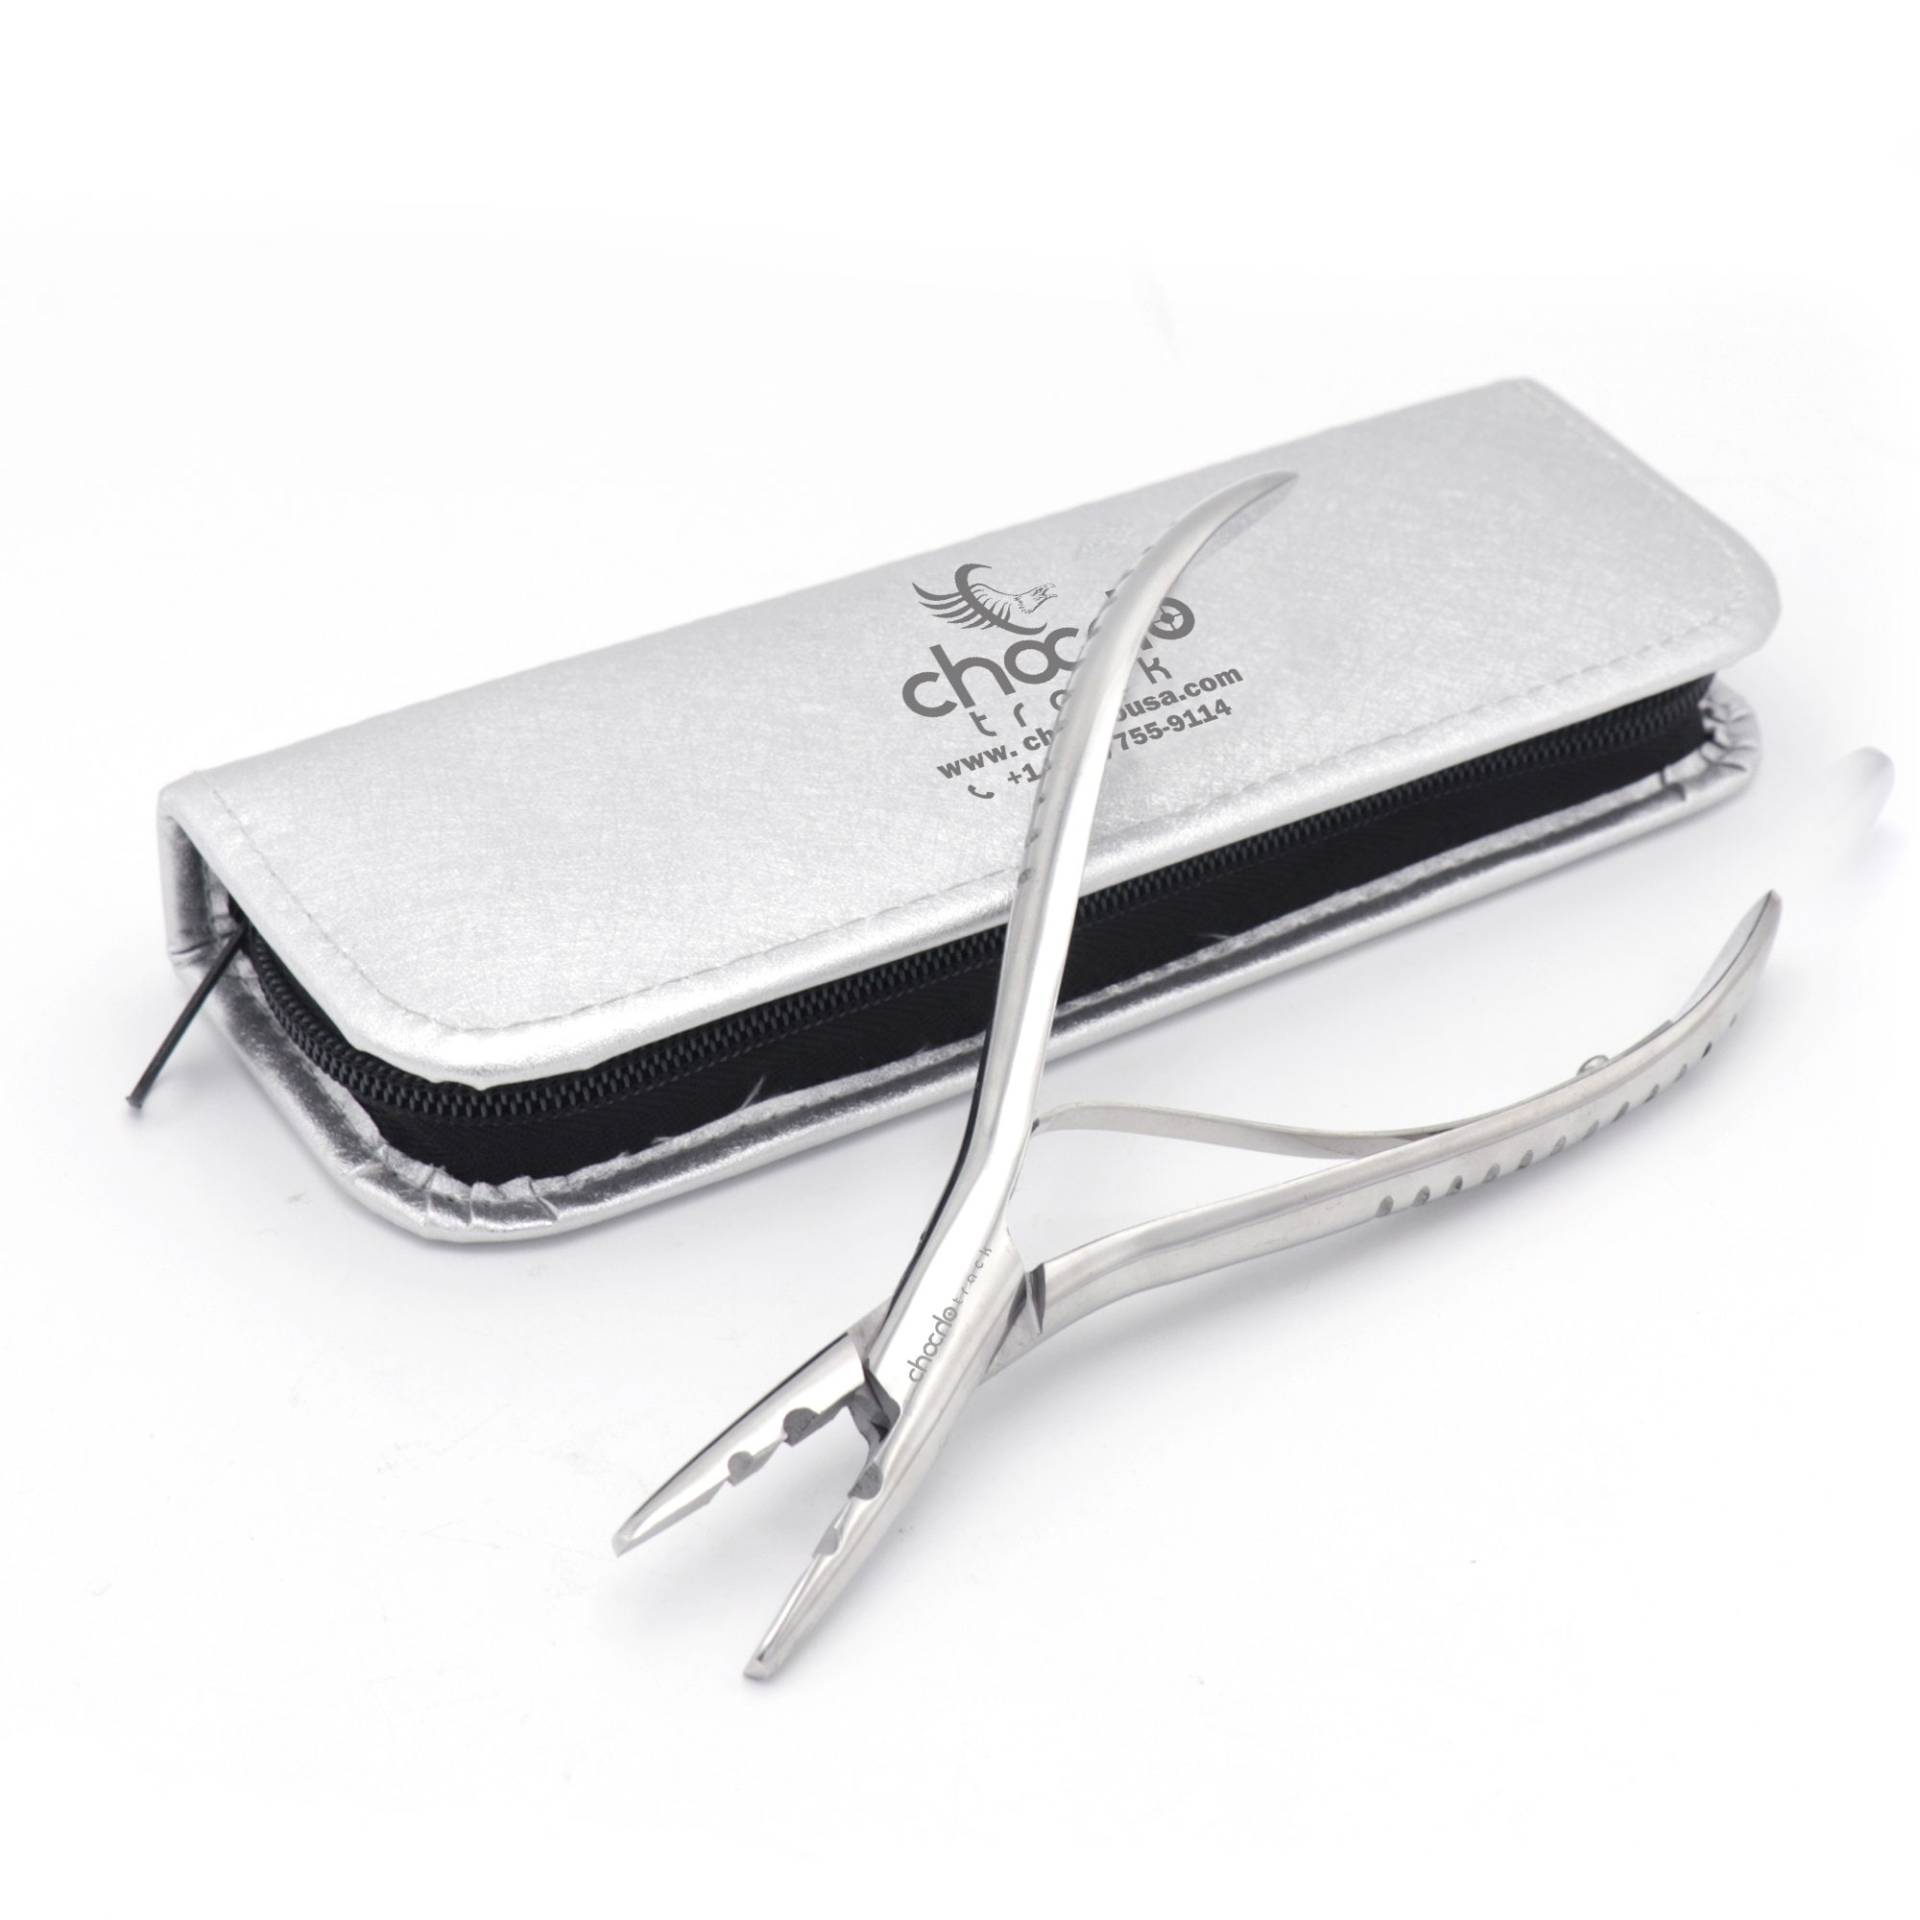 Chocho Pro 7" Lange Haarverlängerung Zange Haare Styling Tool Kit Micro Perlen Näher Plier von Etsy - ChochoTrack